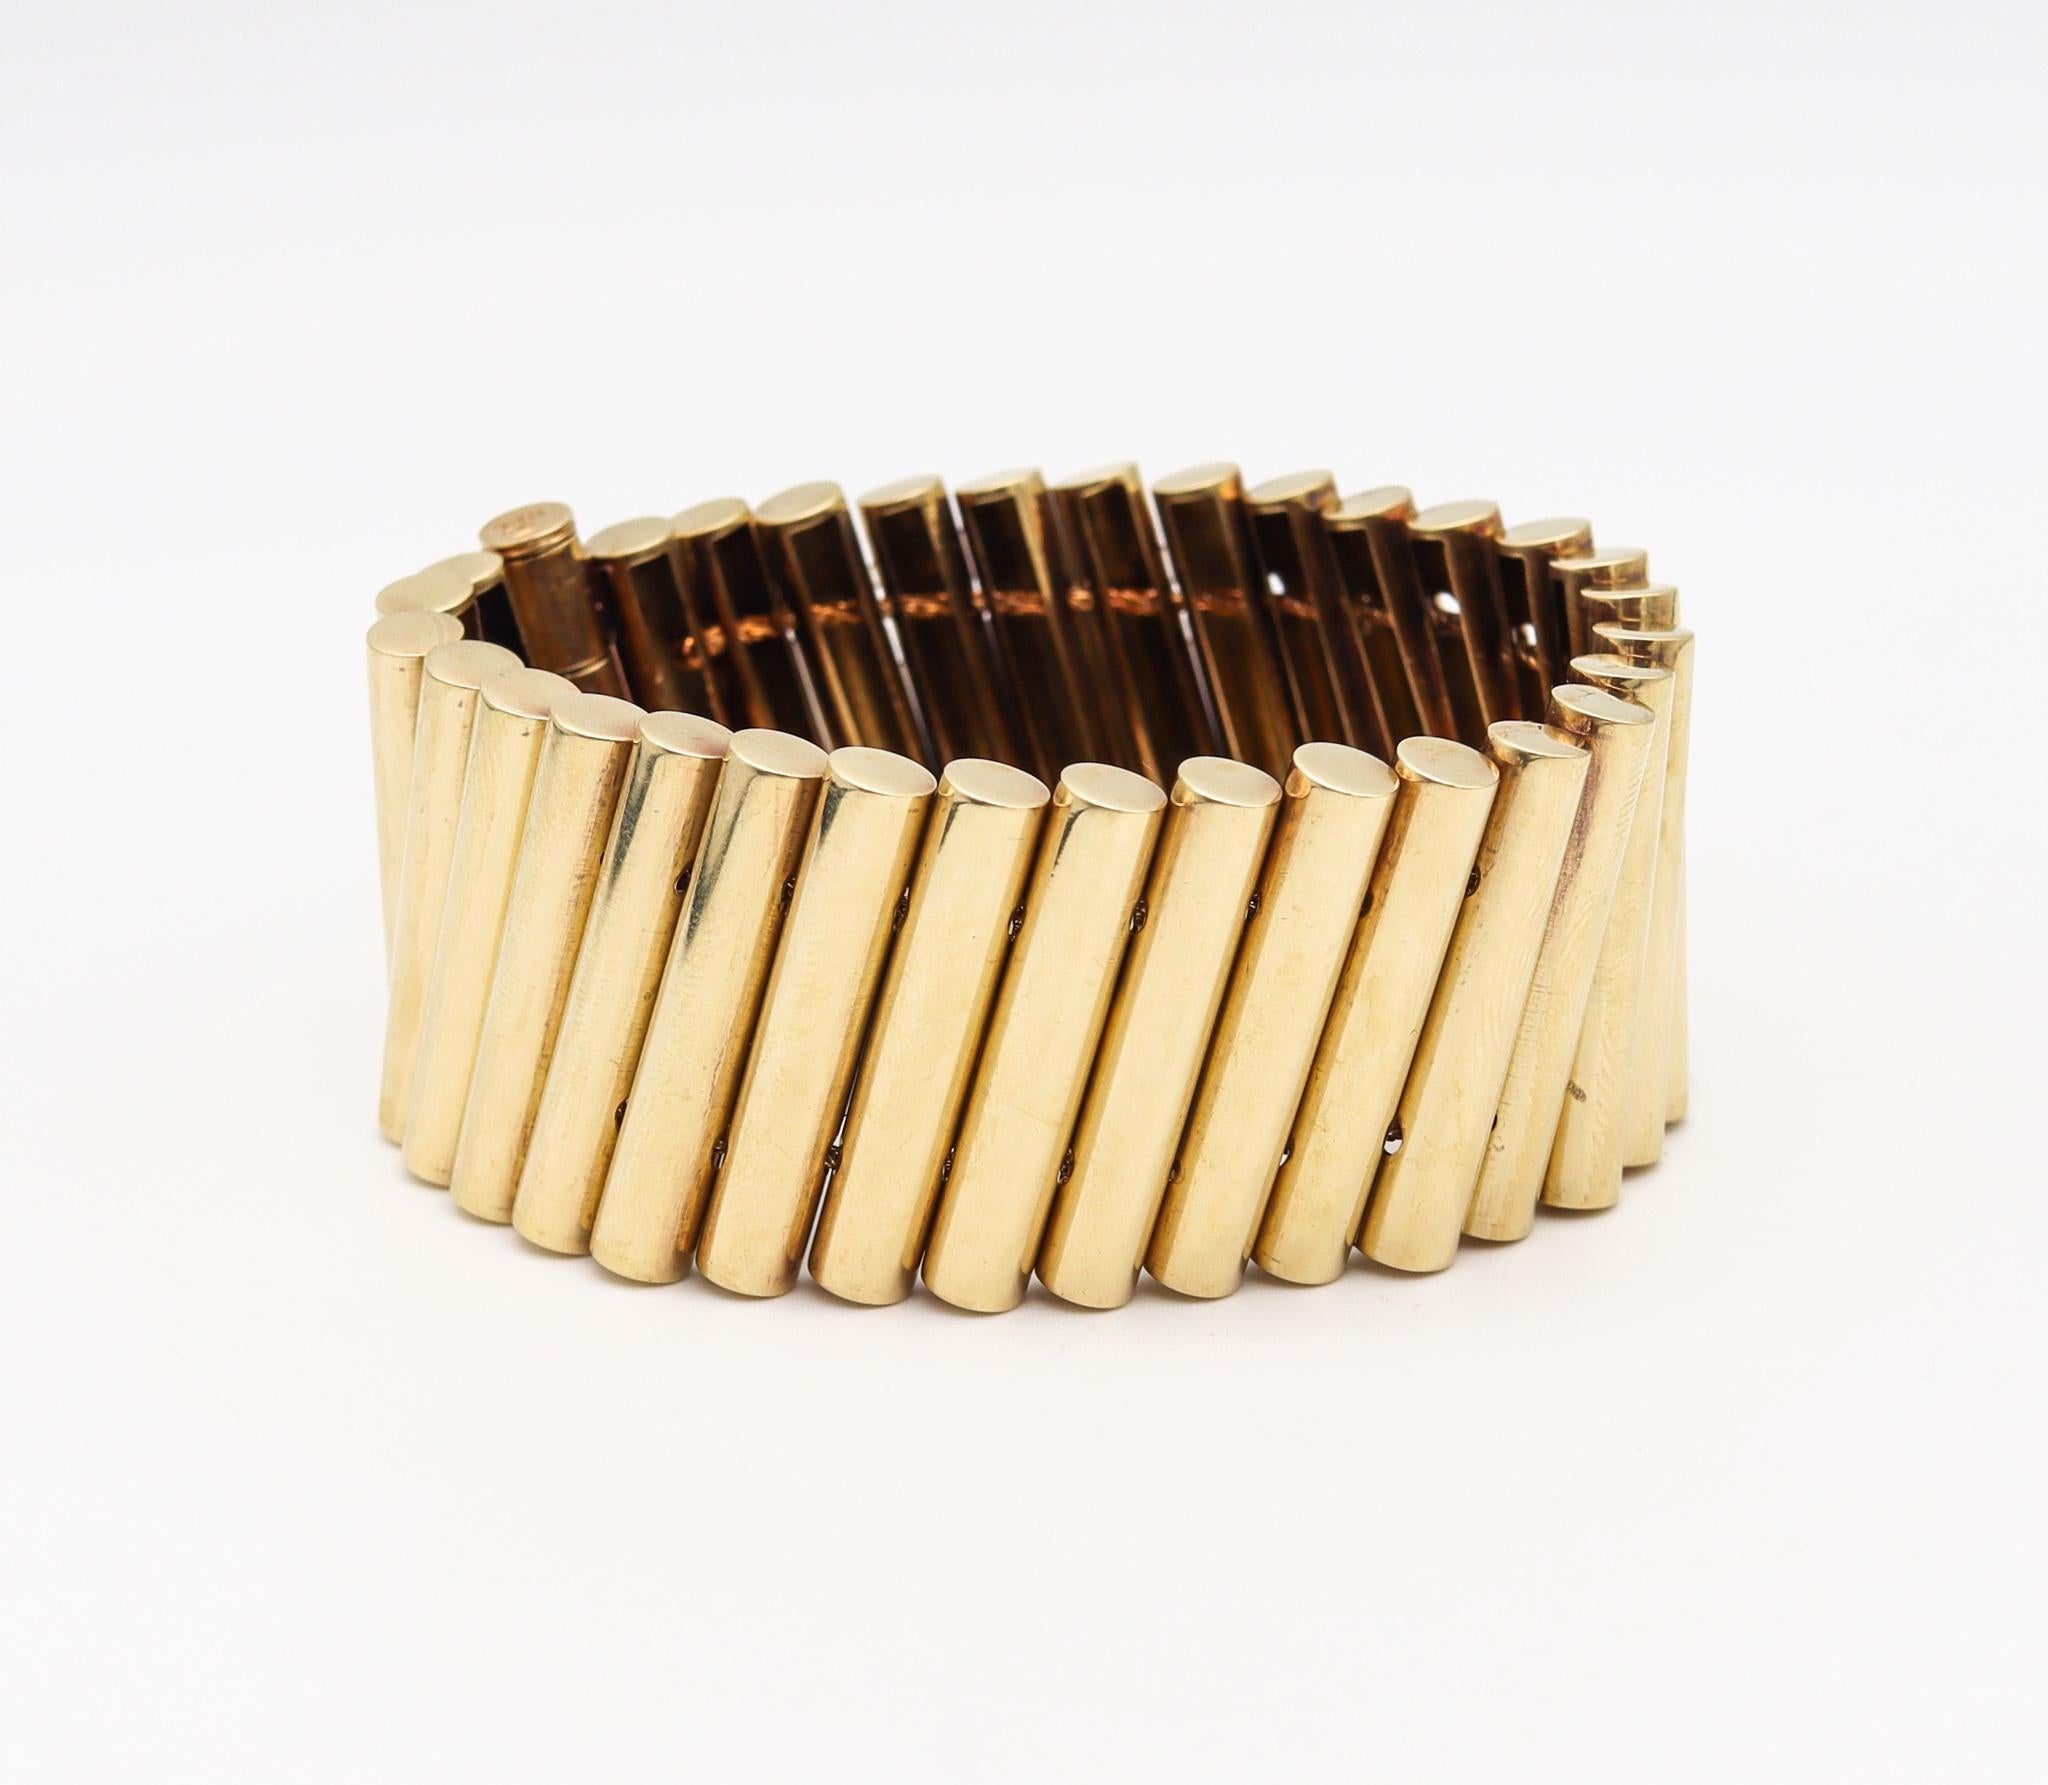 Un bracelet rétro géométrique italien d'après-guerre.

Pièce rétro-moderniste très élégante, créée en Italie pendant la période d'après-guerre, dans les années 1950. Ce magnifique bracelet épuré a été soigneusement réalisé avec des éléments